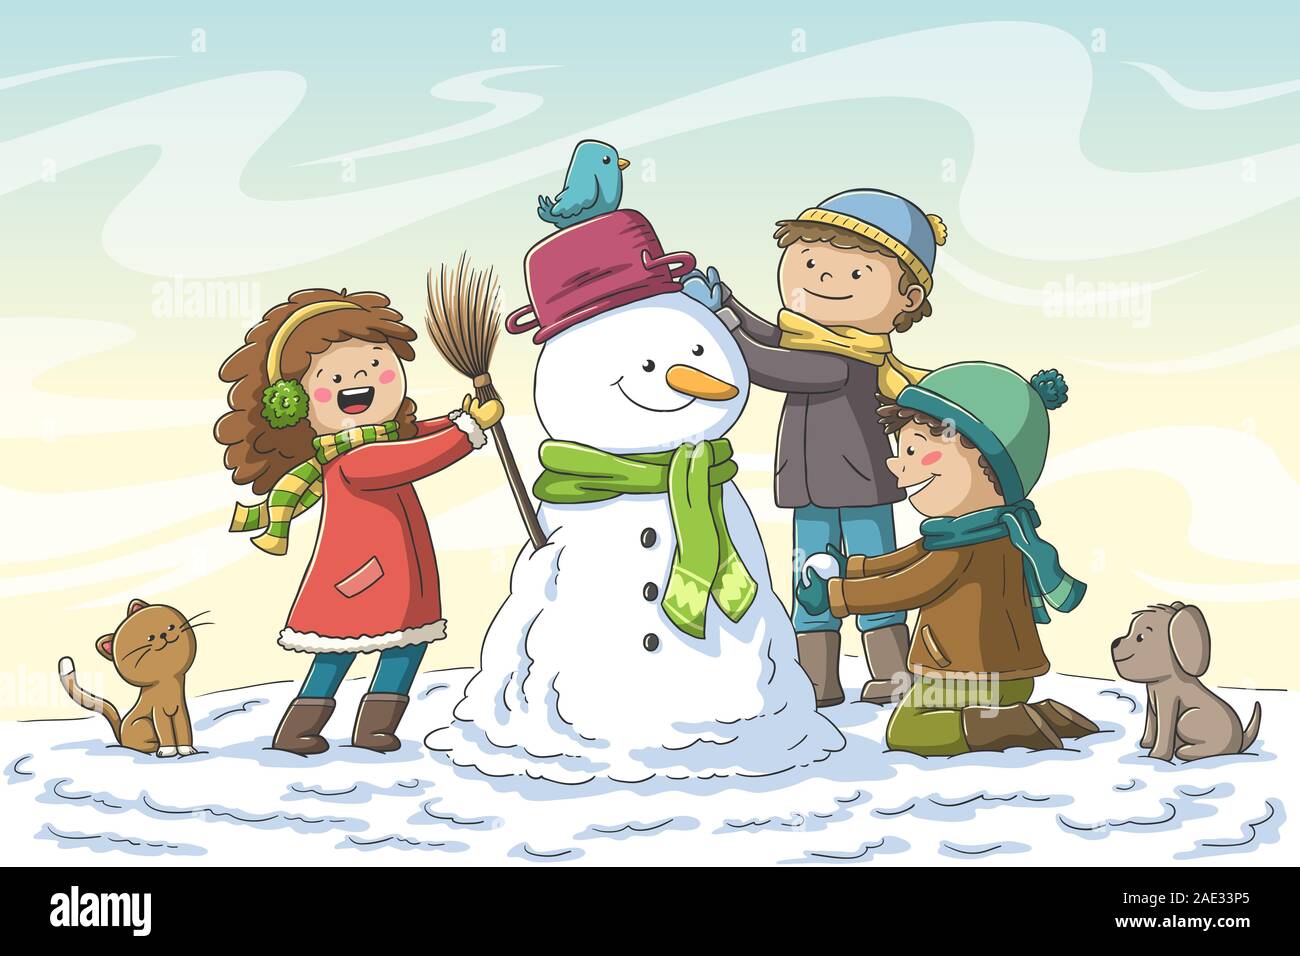 Drei Kinder bauen einen Schneemann. Hand Vector Illustration mit separaten Ebenen gezeichnet. Stock Vektor